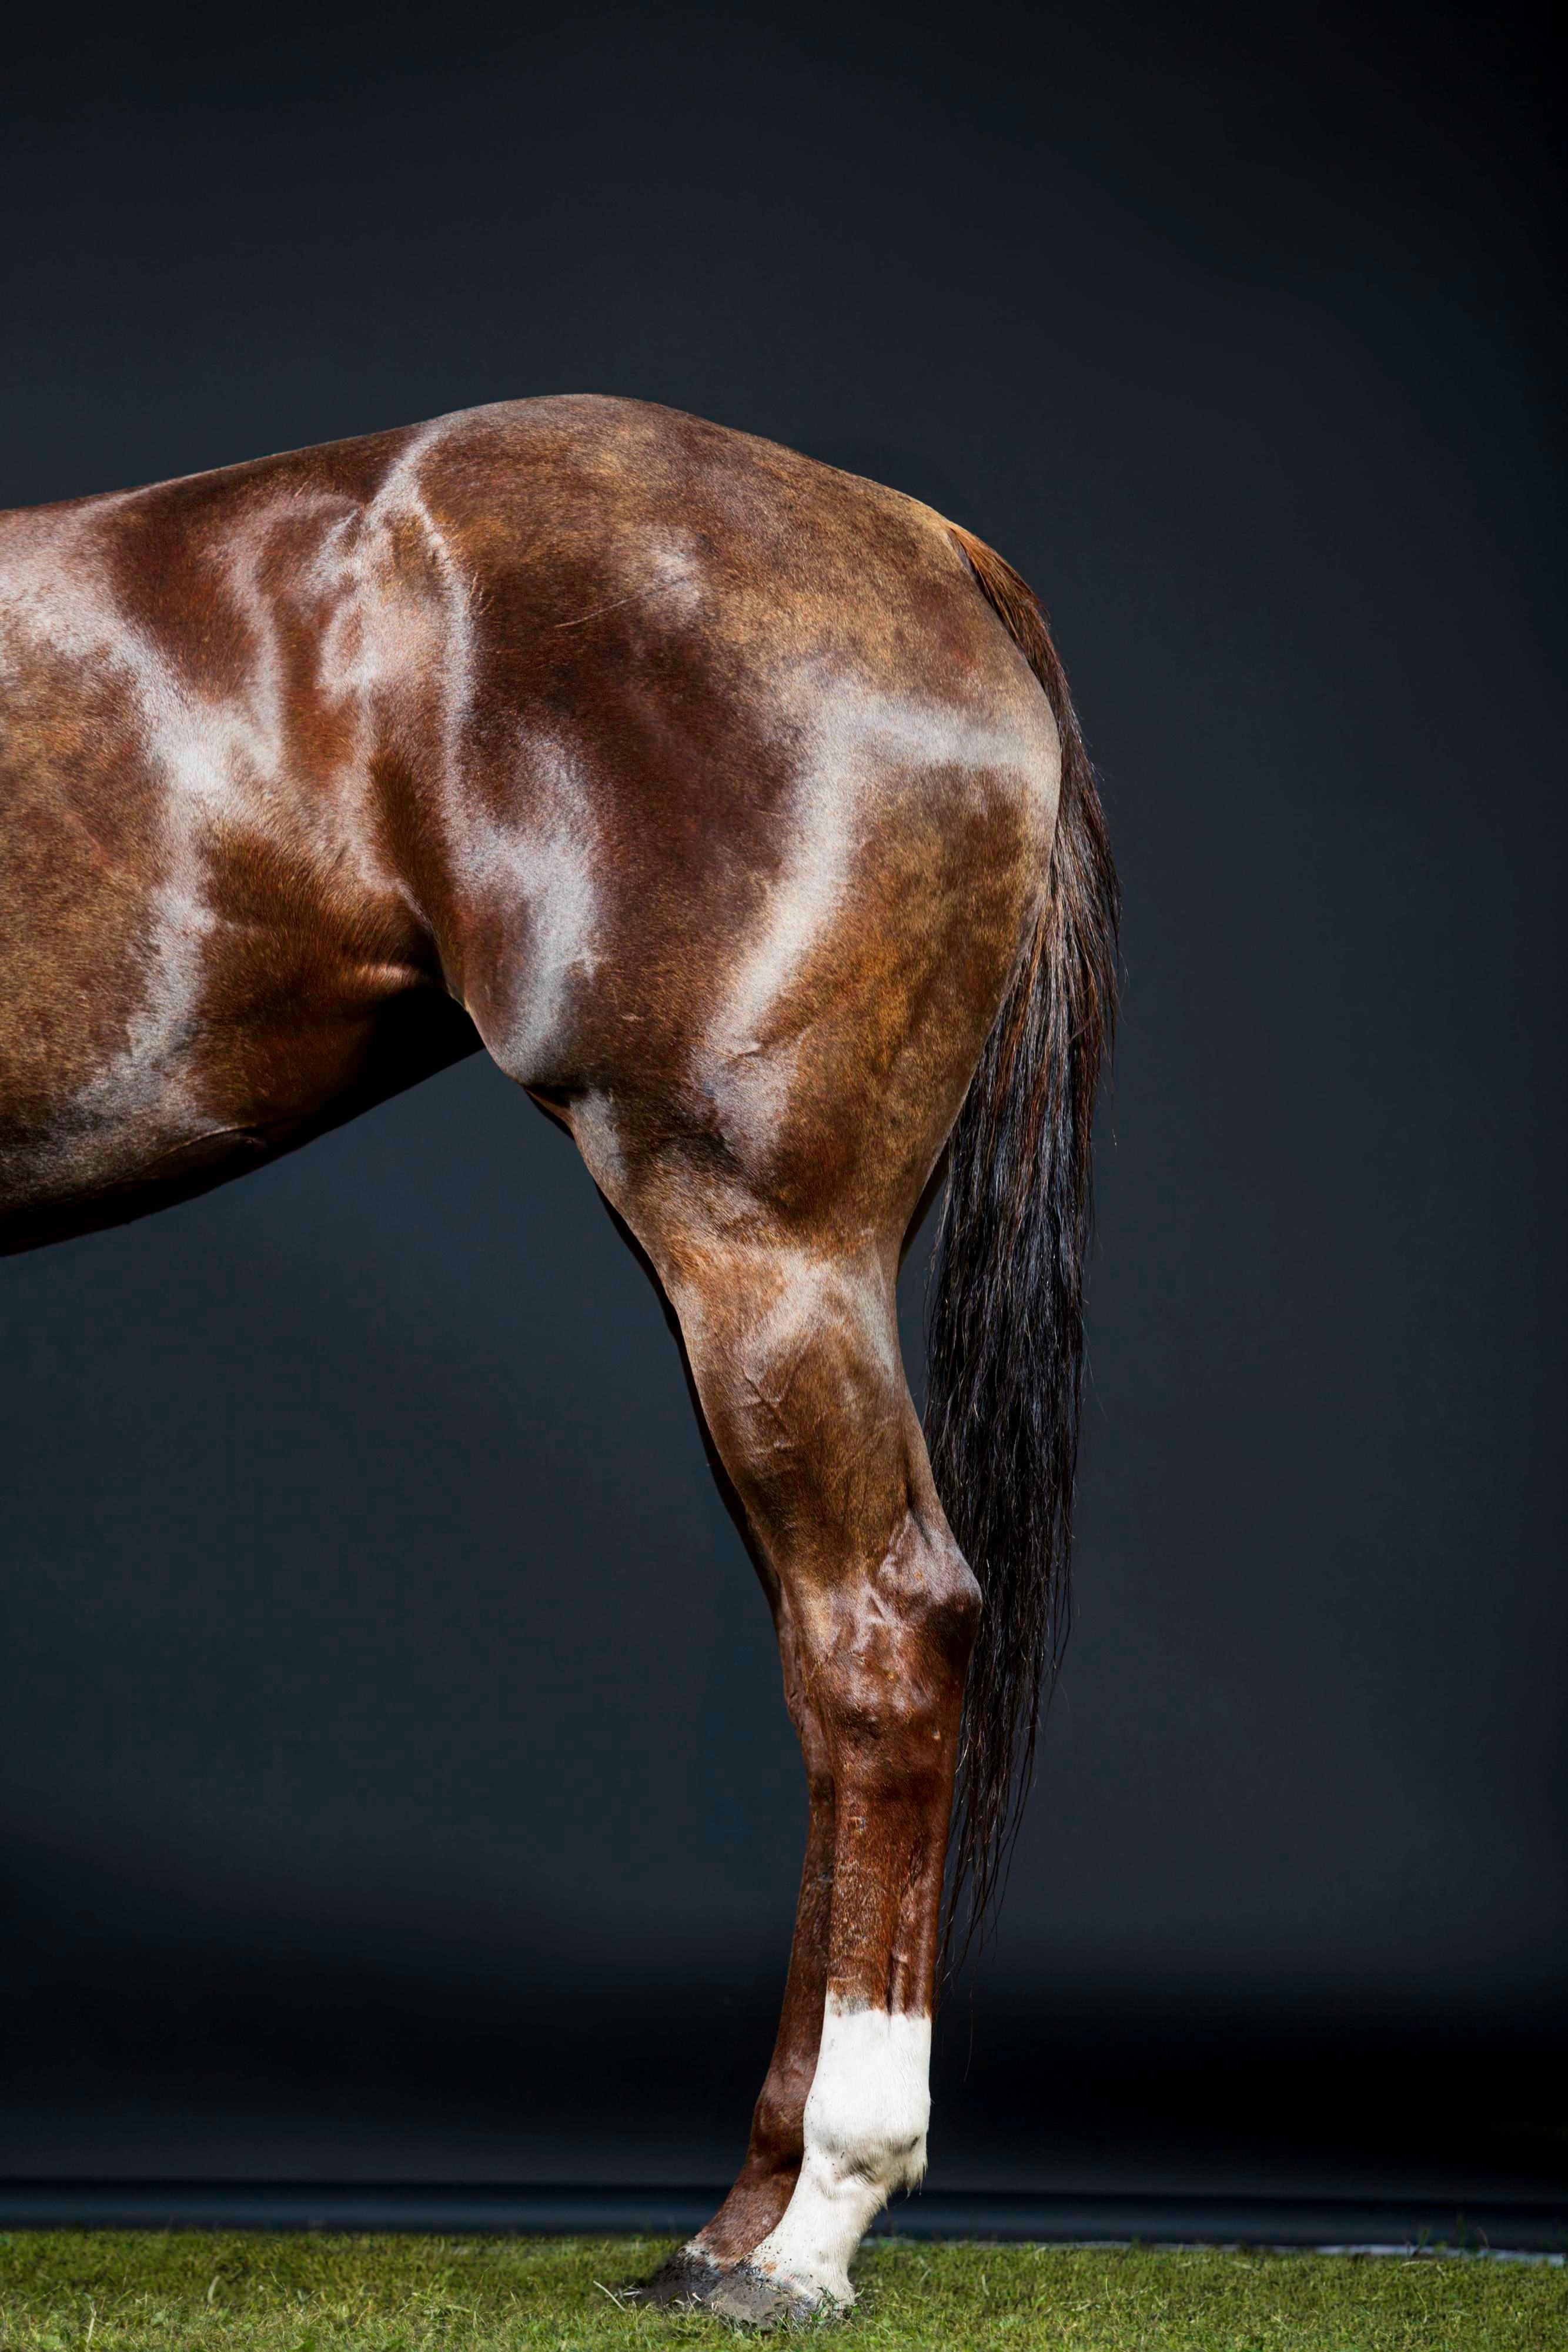 Rusa Beine II – Pferdeporträt in voller Farbe, limitierte Auflage, 2015 – Photograph von Juan Lamarca